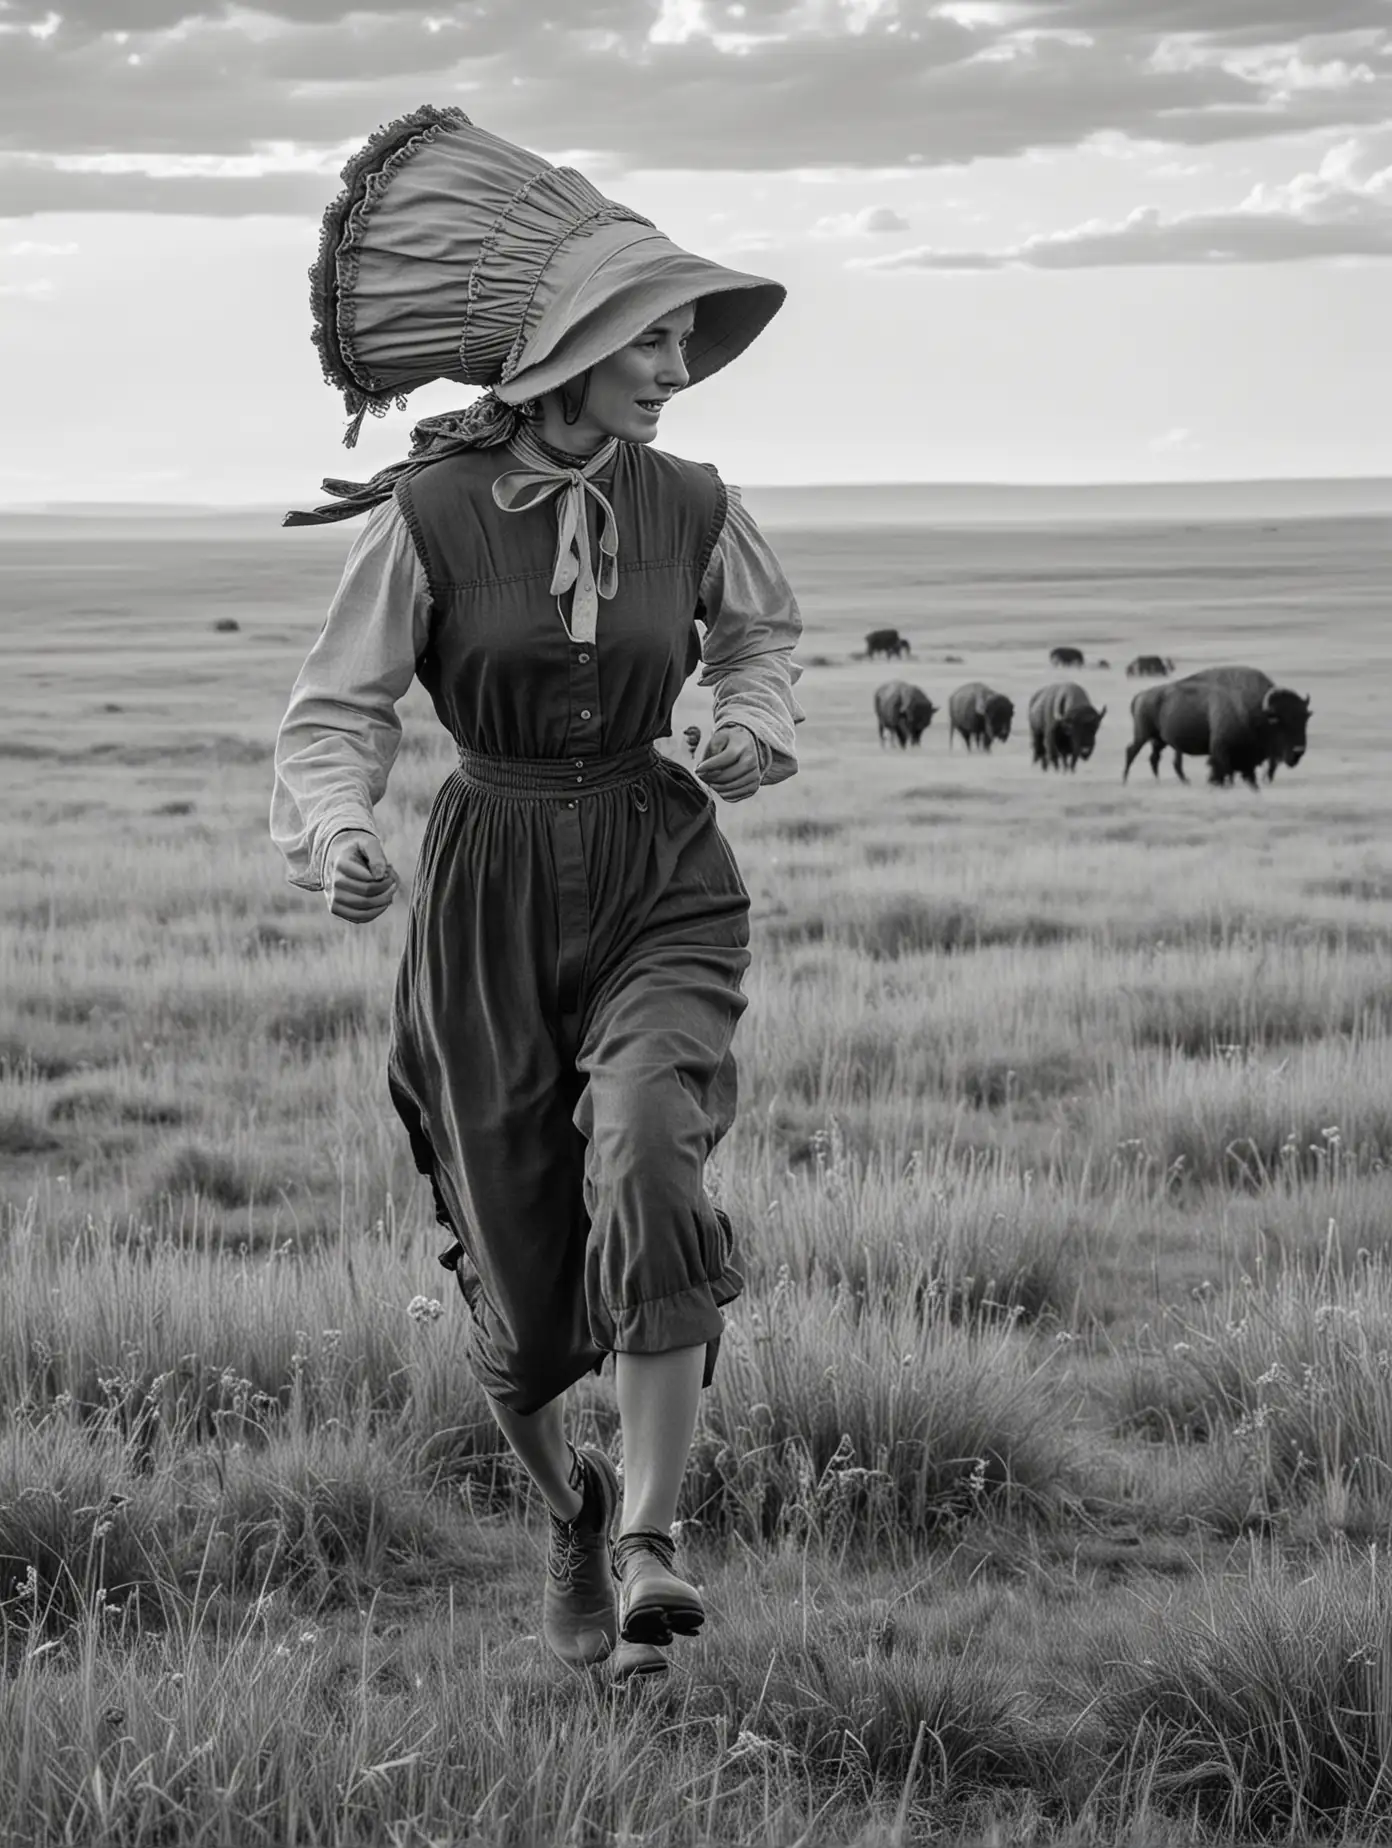 Pioneer Woman Running Through BuffaloFilled Prairie in Classic Monochrome